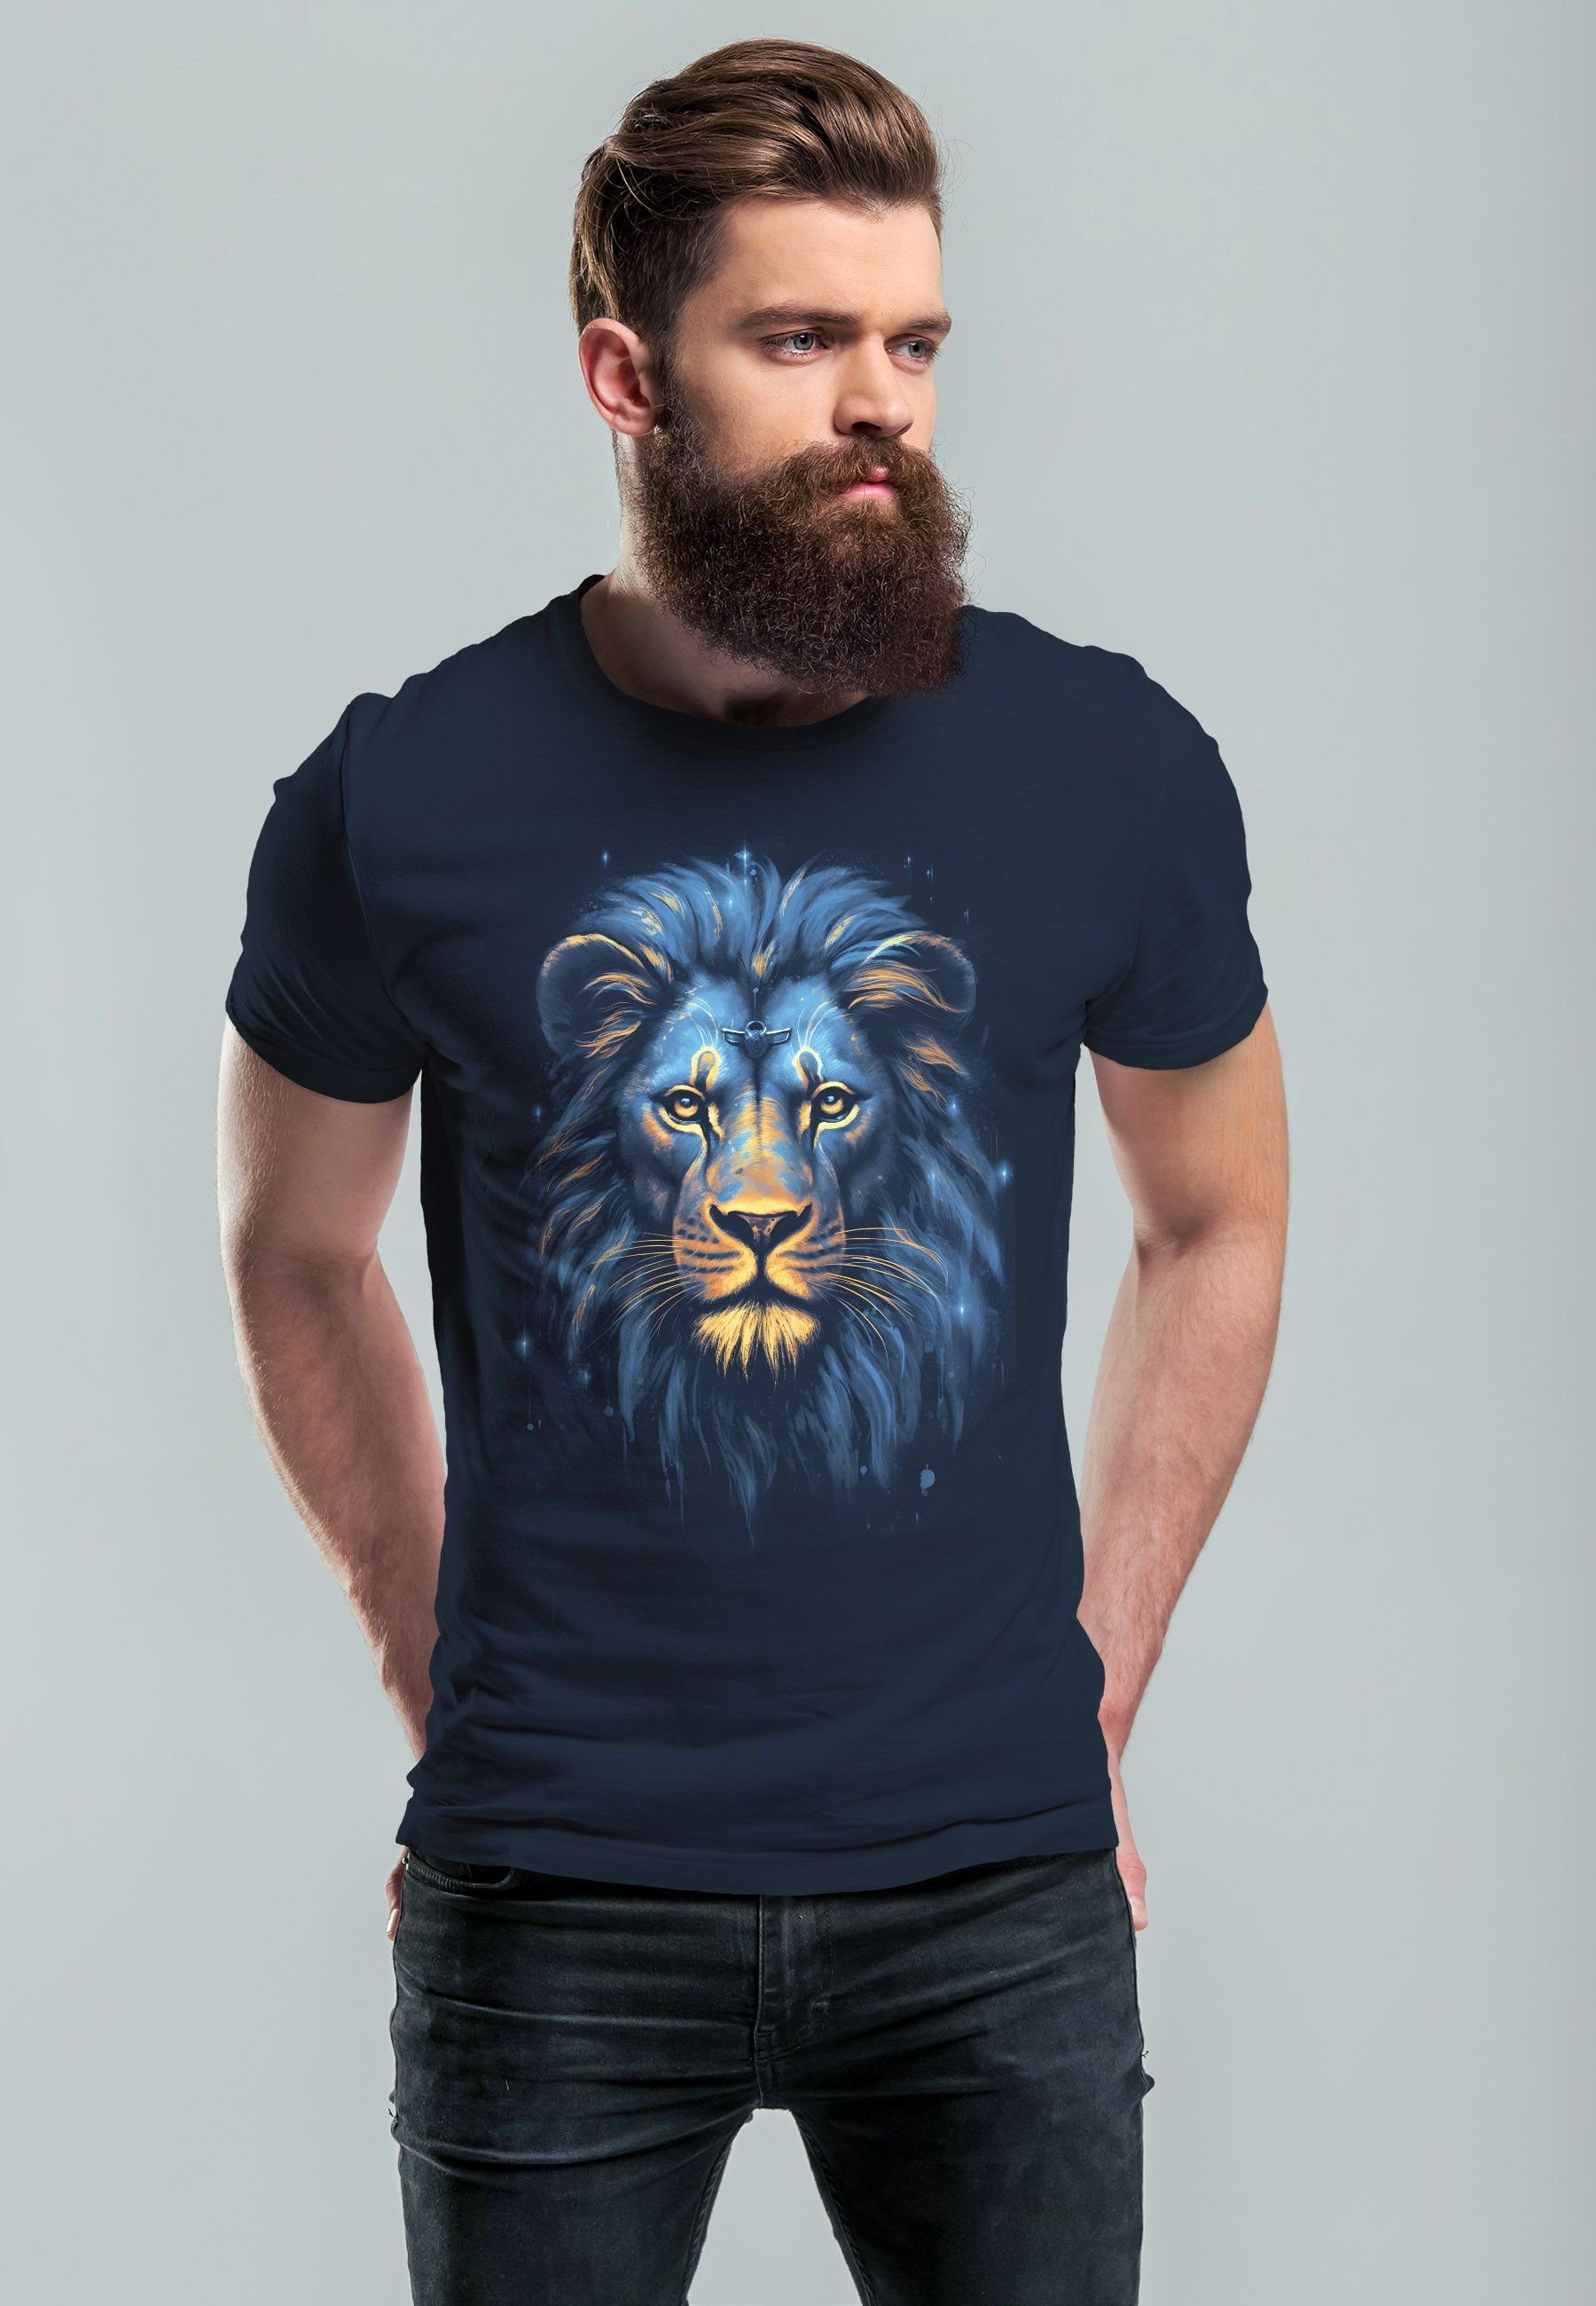 Printsh T-Shirt mit Löwe Lion Neverless Print-Shirt Aufdruck Herren navy Kunst Illustration Art-Print Print